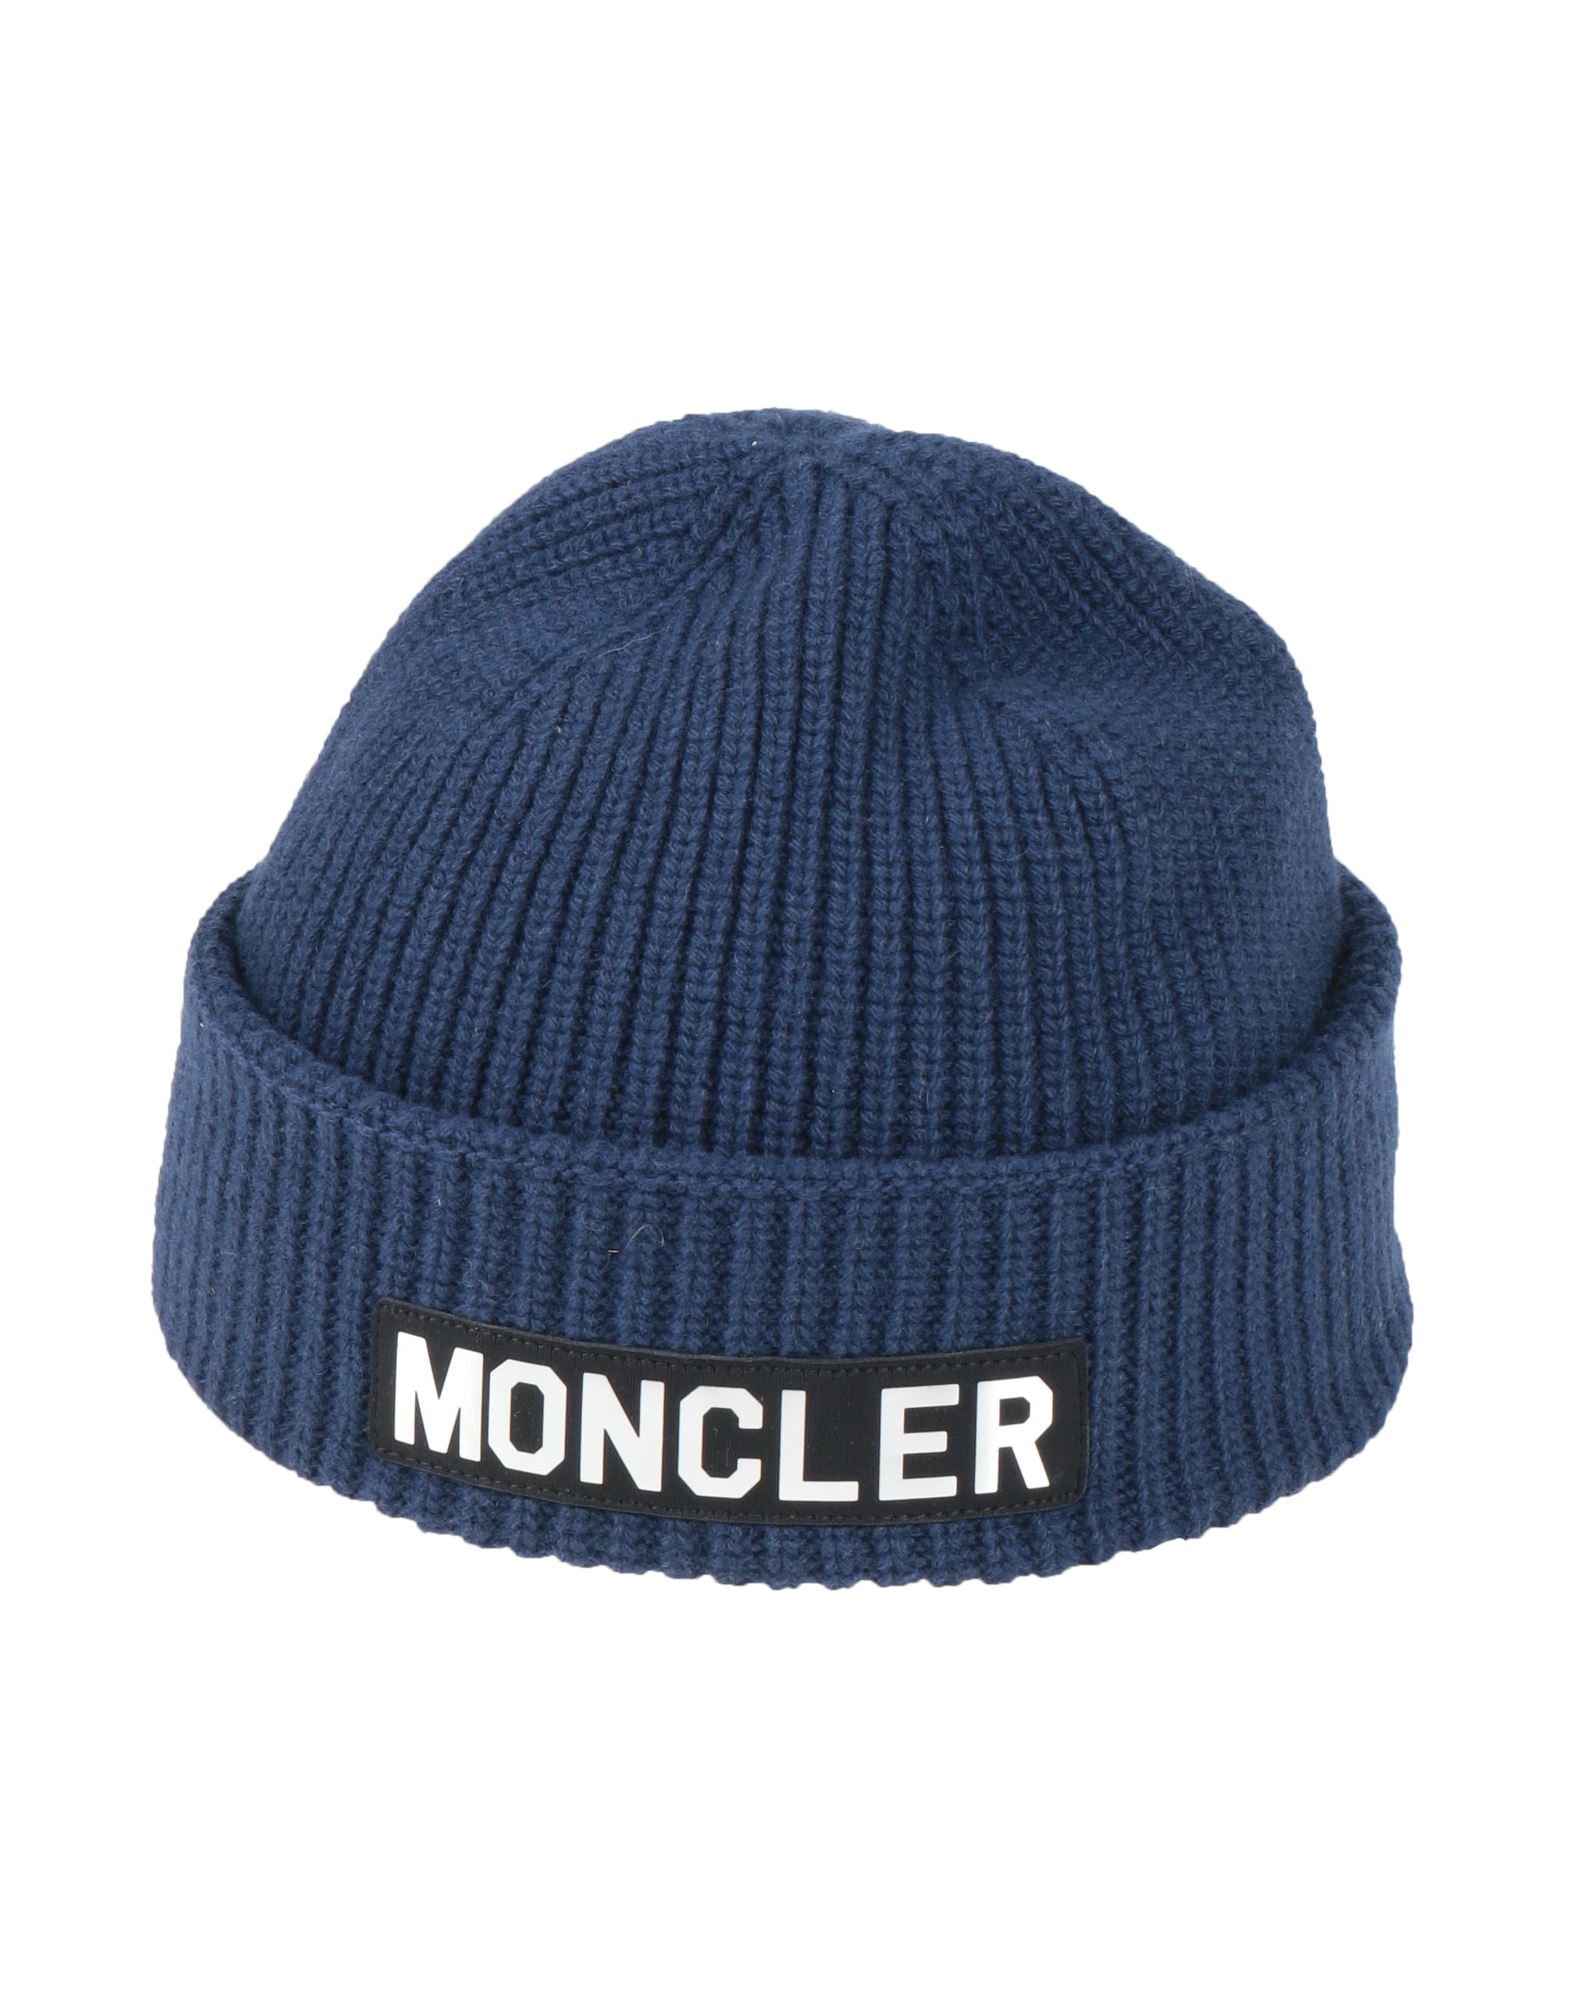 モンクレール(MONCLER) メンズ帽子・キャップ | 通販・人気ランキング ...